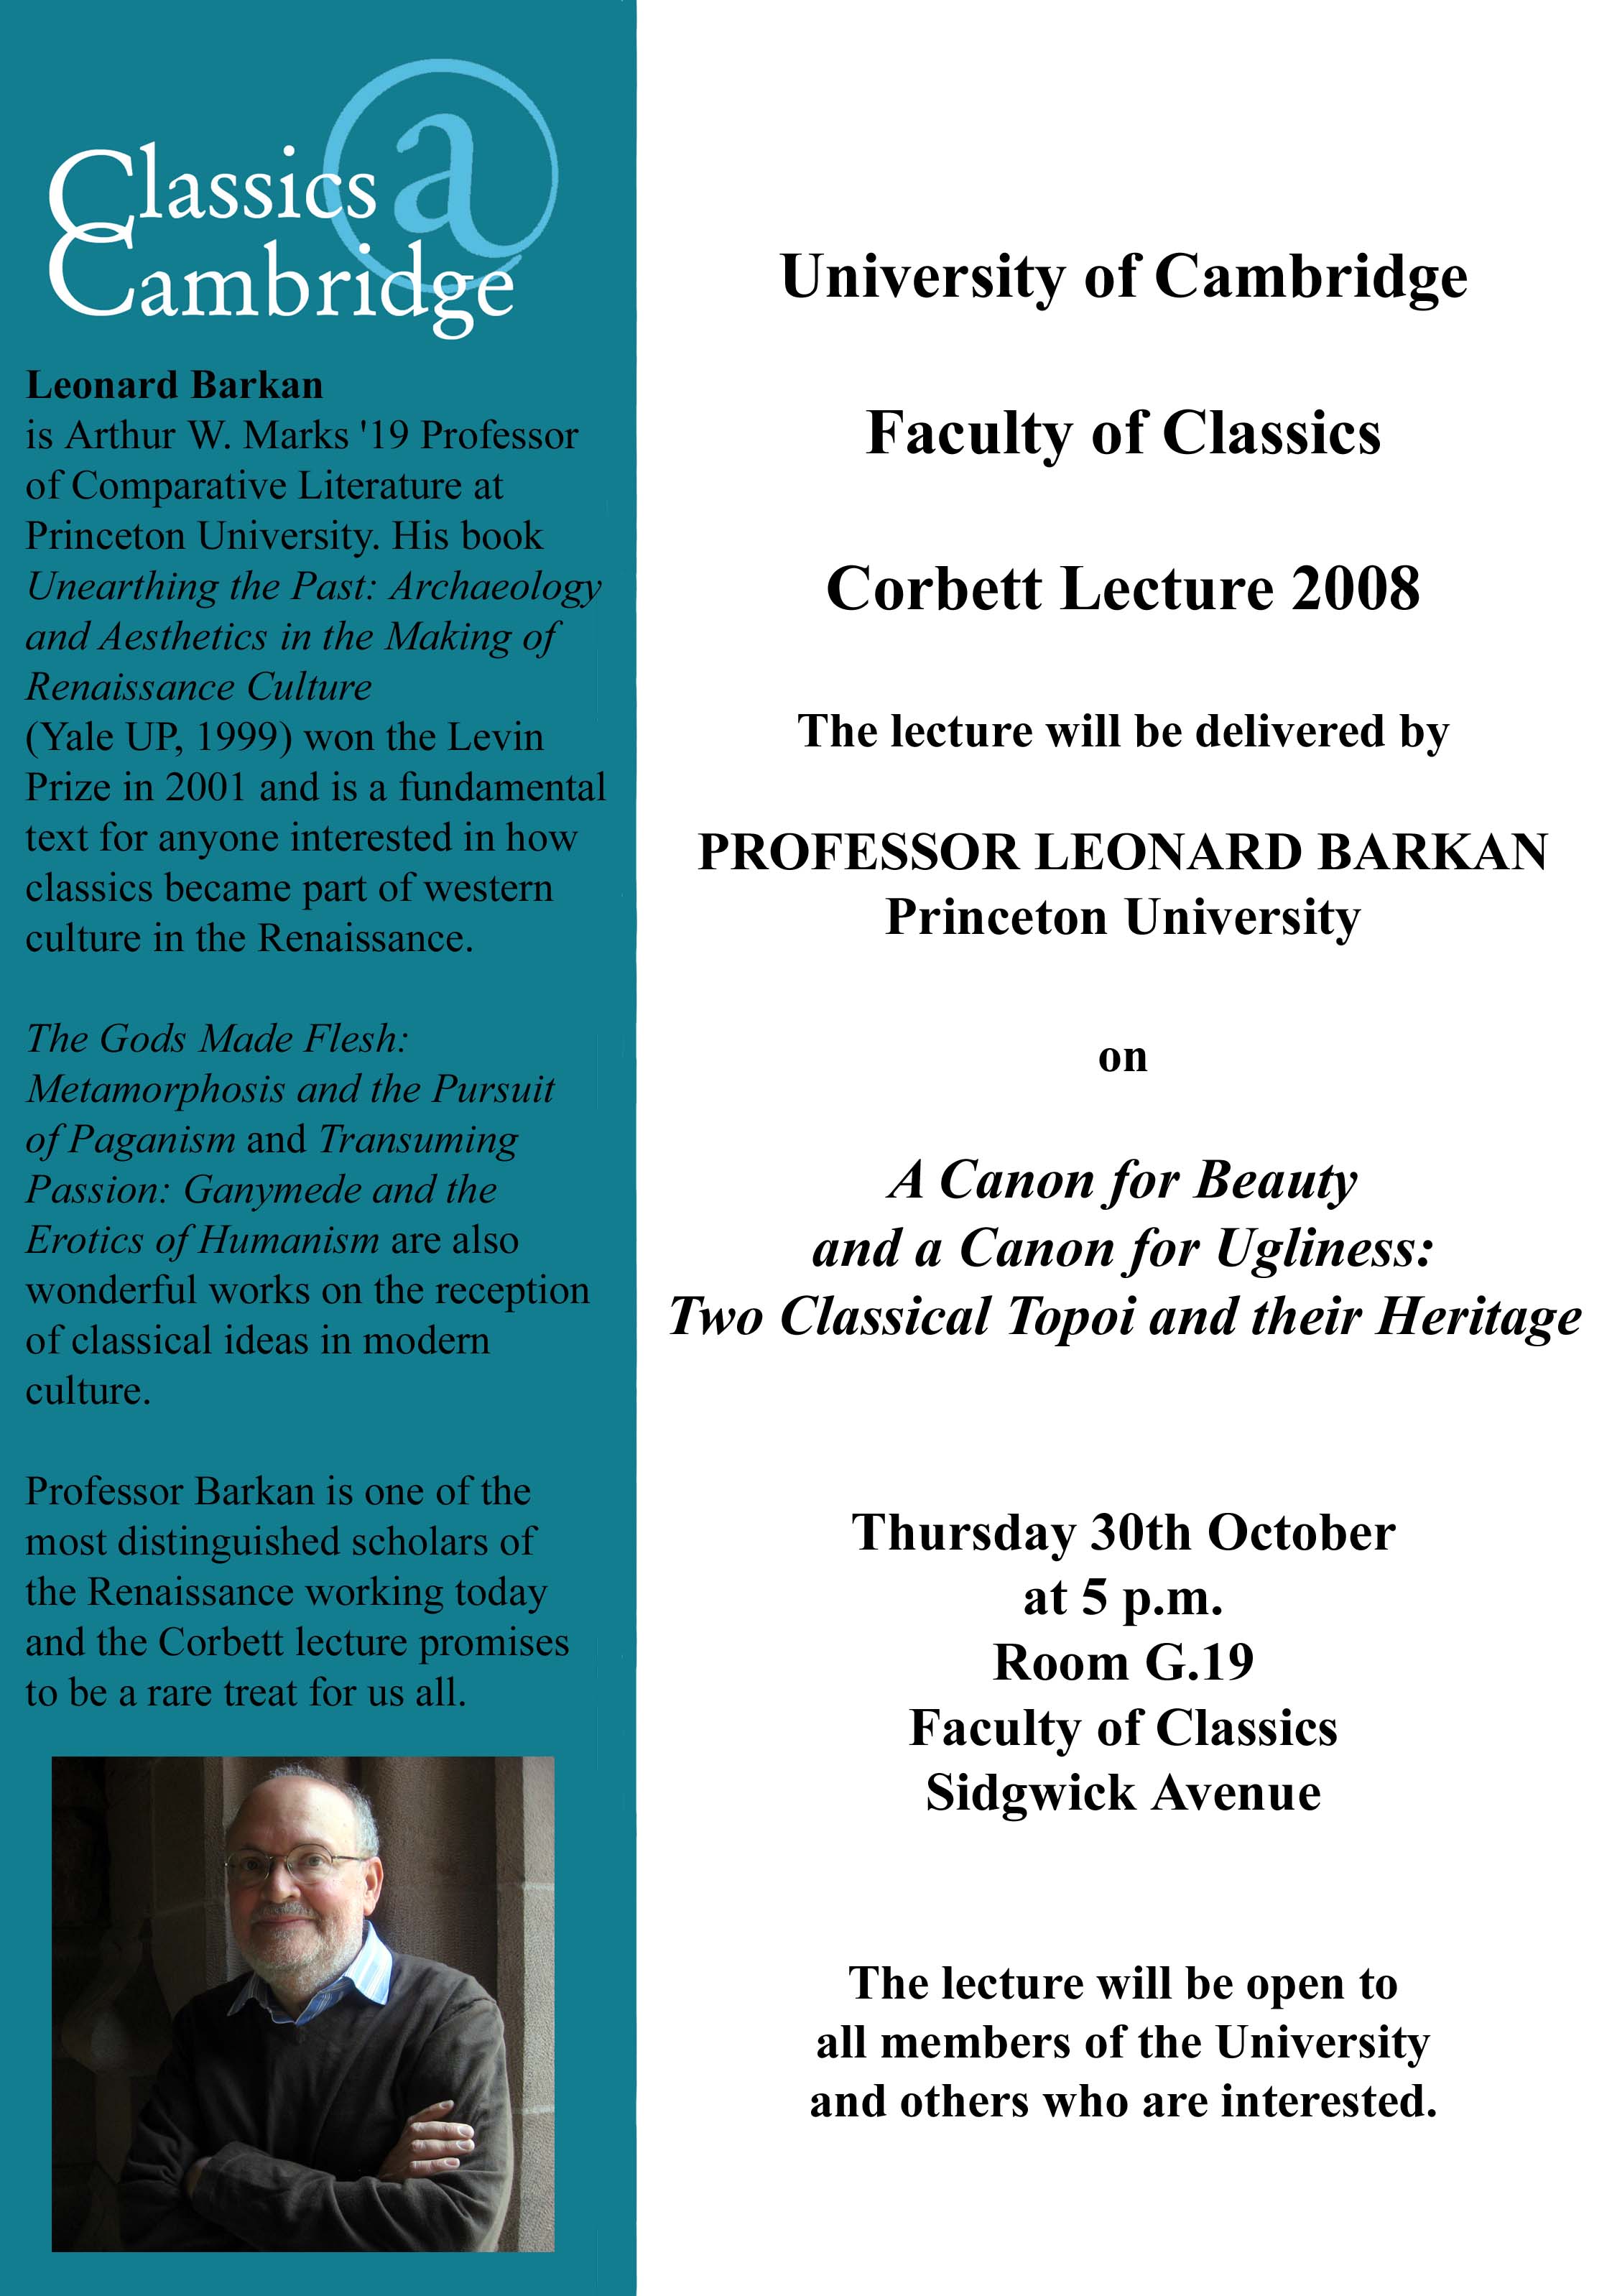 Corbett Lecture 2008